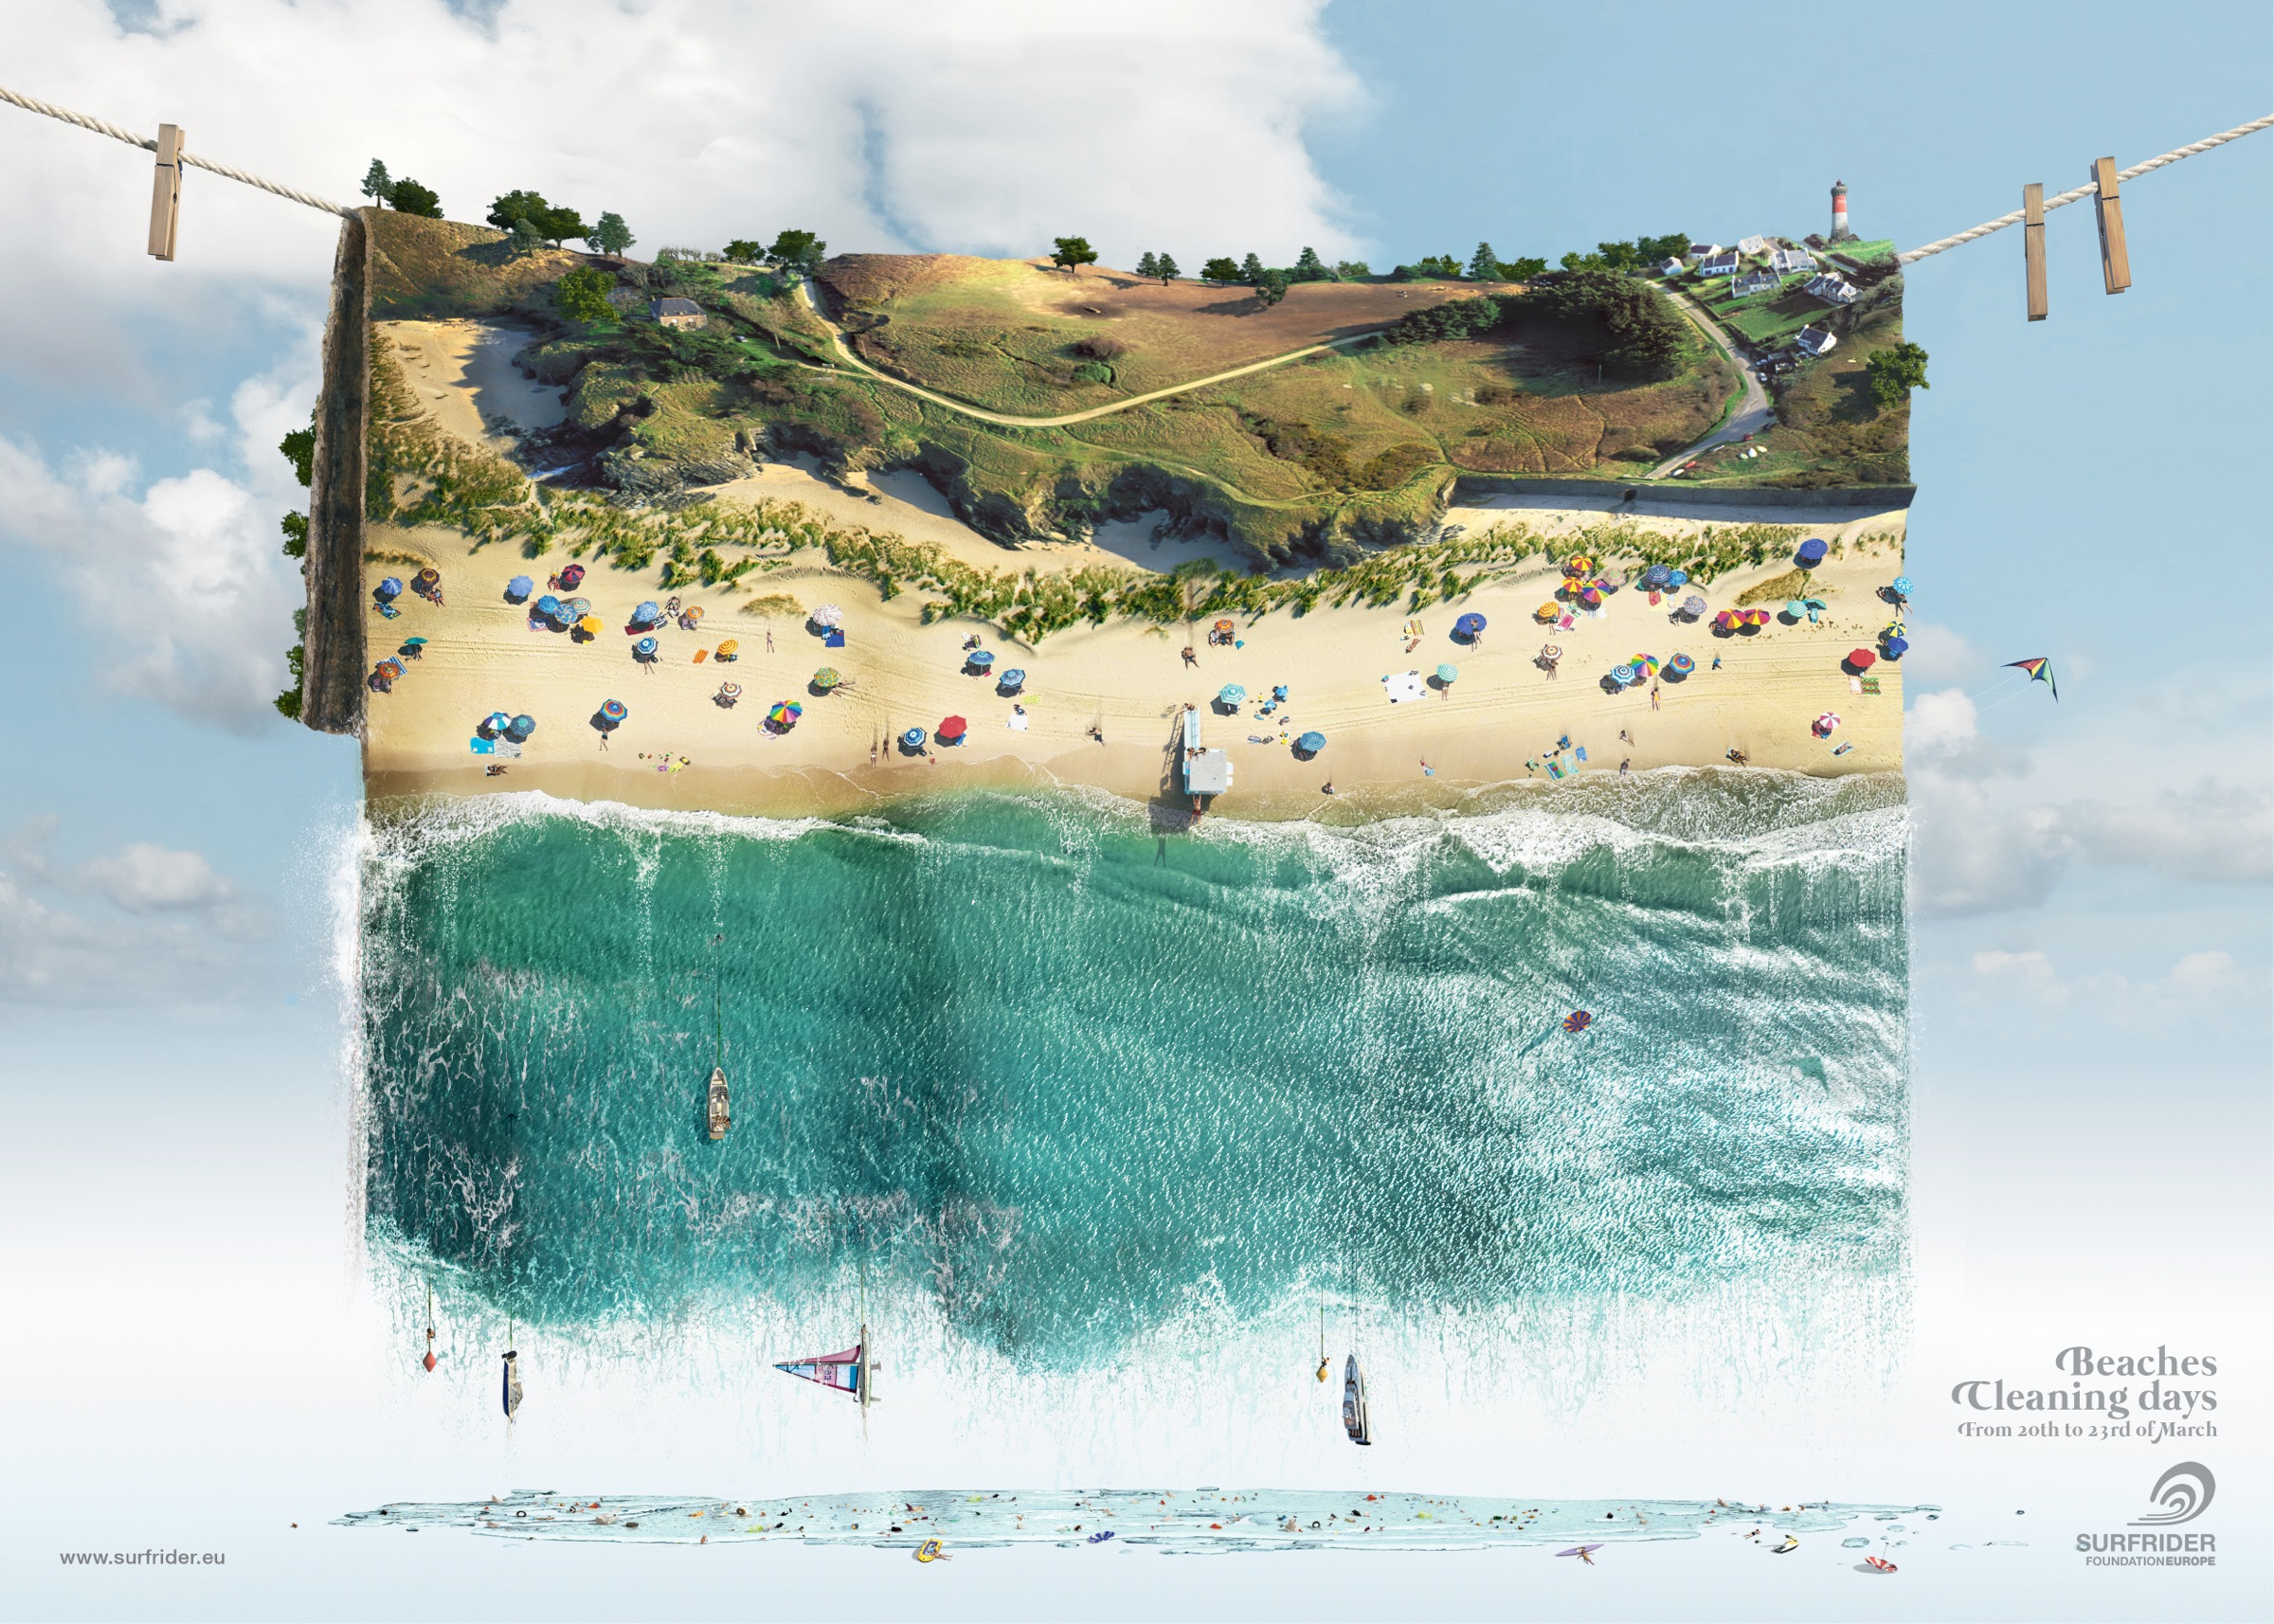 法国冲浪者基金会平面广告设计